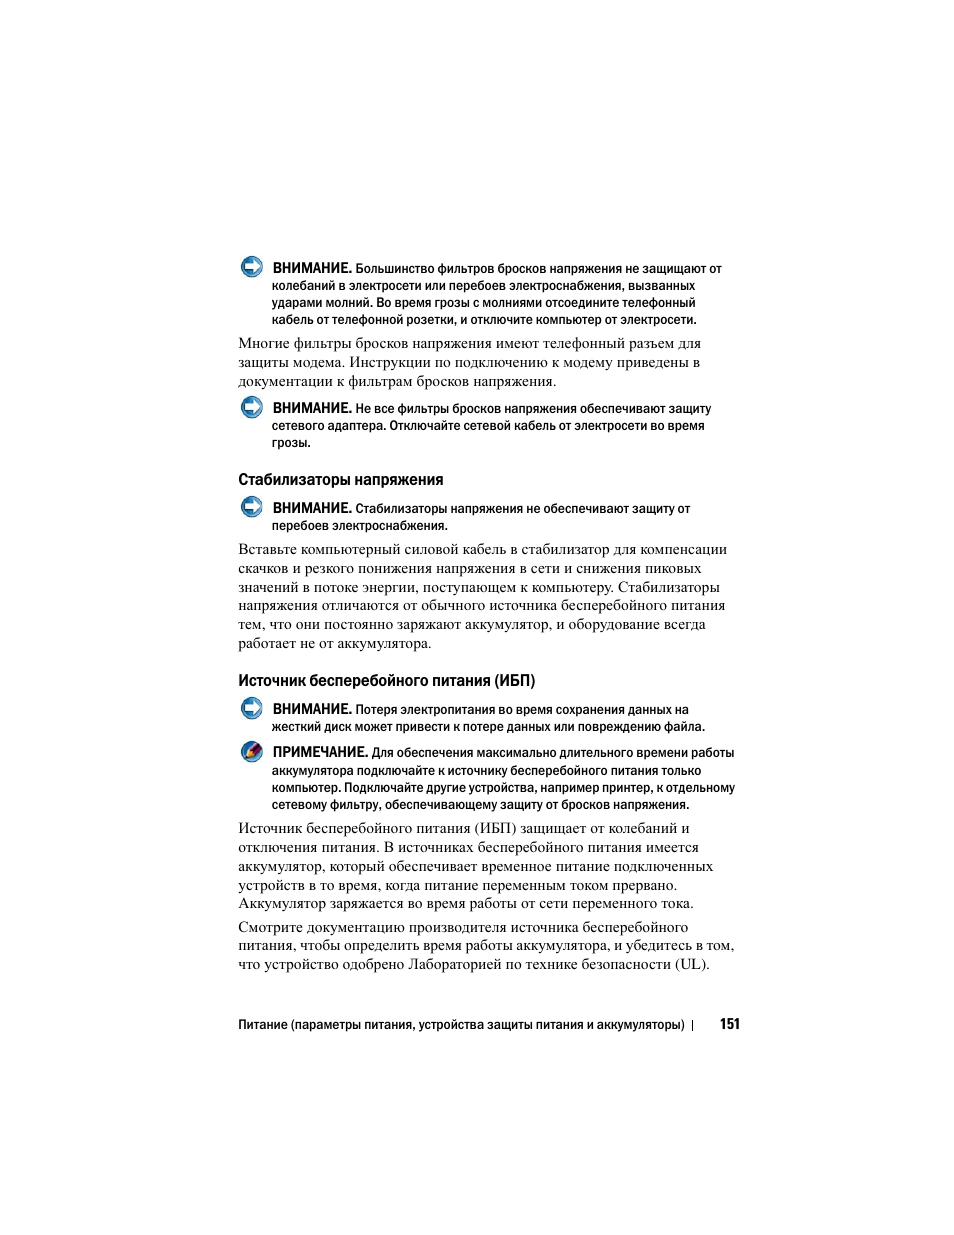 Стабилизаторы напряжения, Источник бесперебойного питания (ибп) | Инструкция по эксплуатации Dell Inspiron 560 | Страница 151 / 384